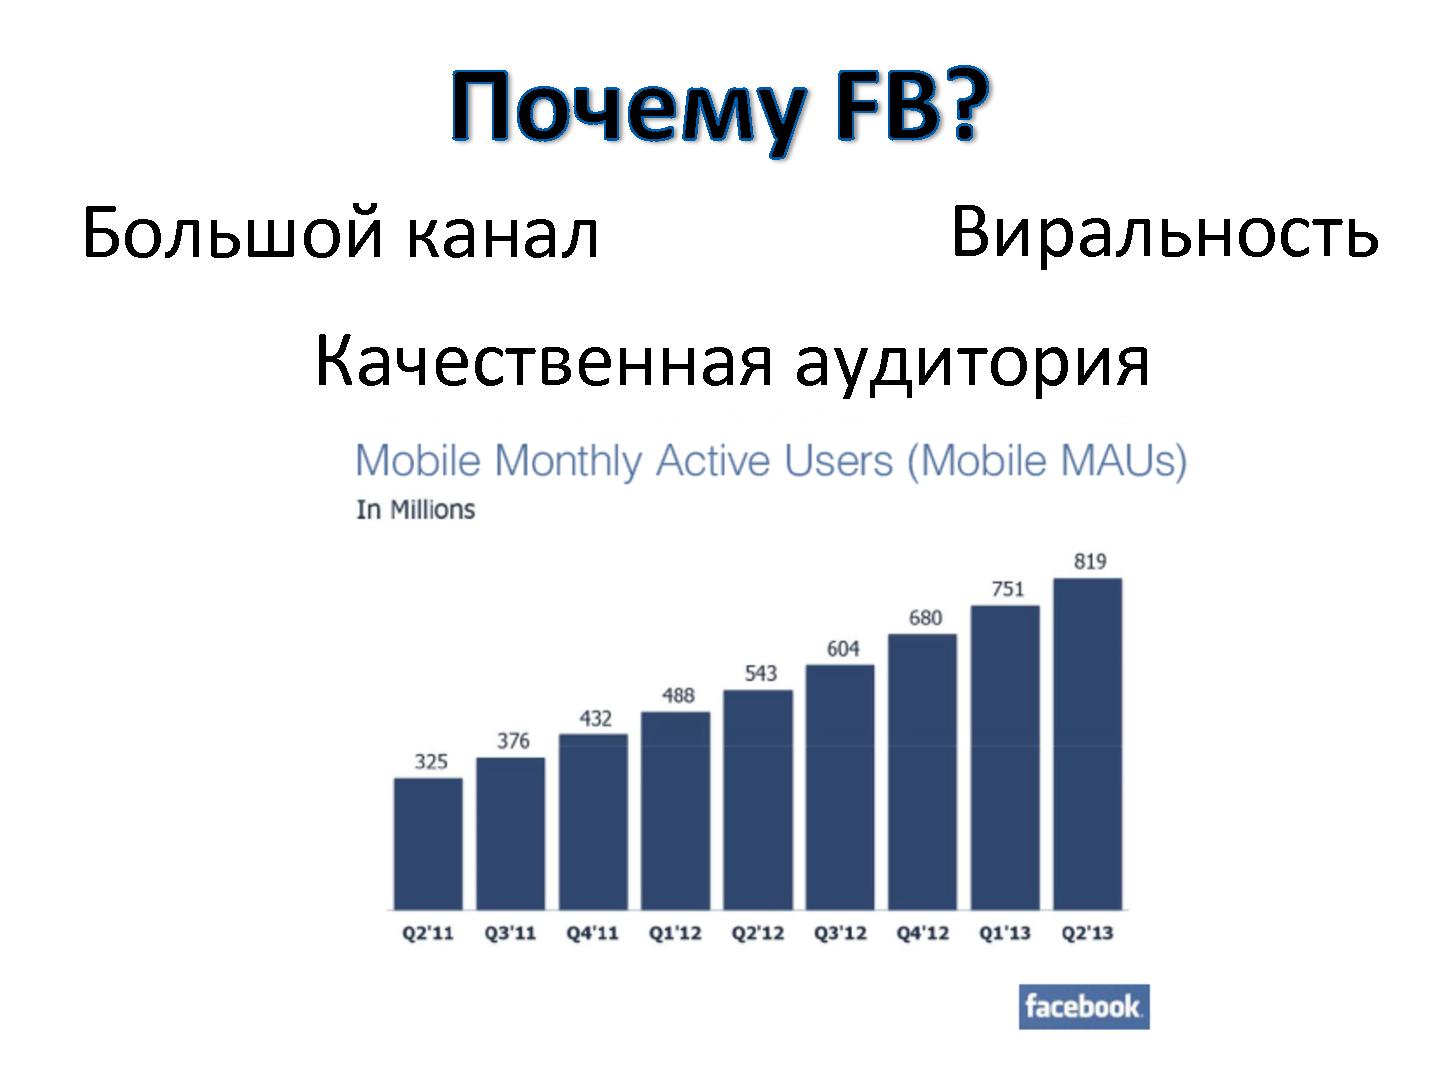 Файл:Привлечение пользователей через Facebook (Виталий Герко, ProductCamp-2013).pdf